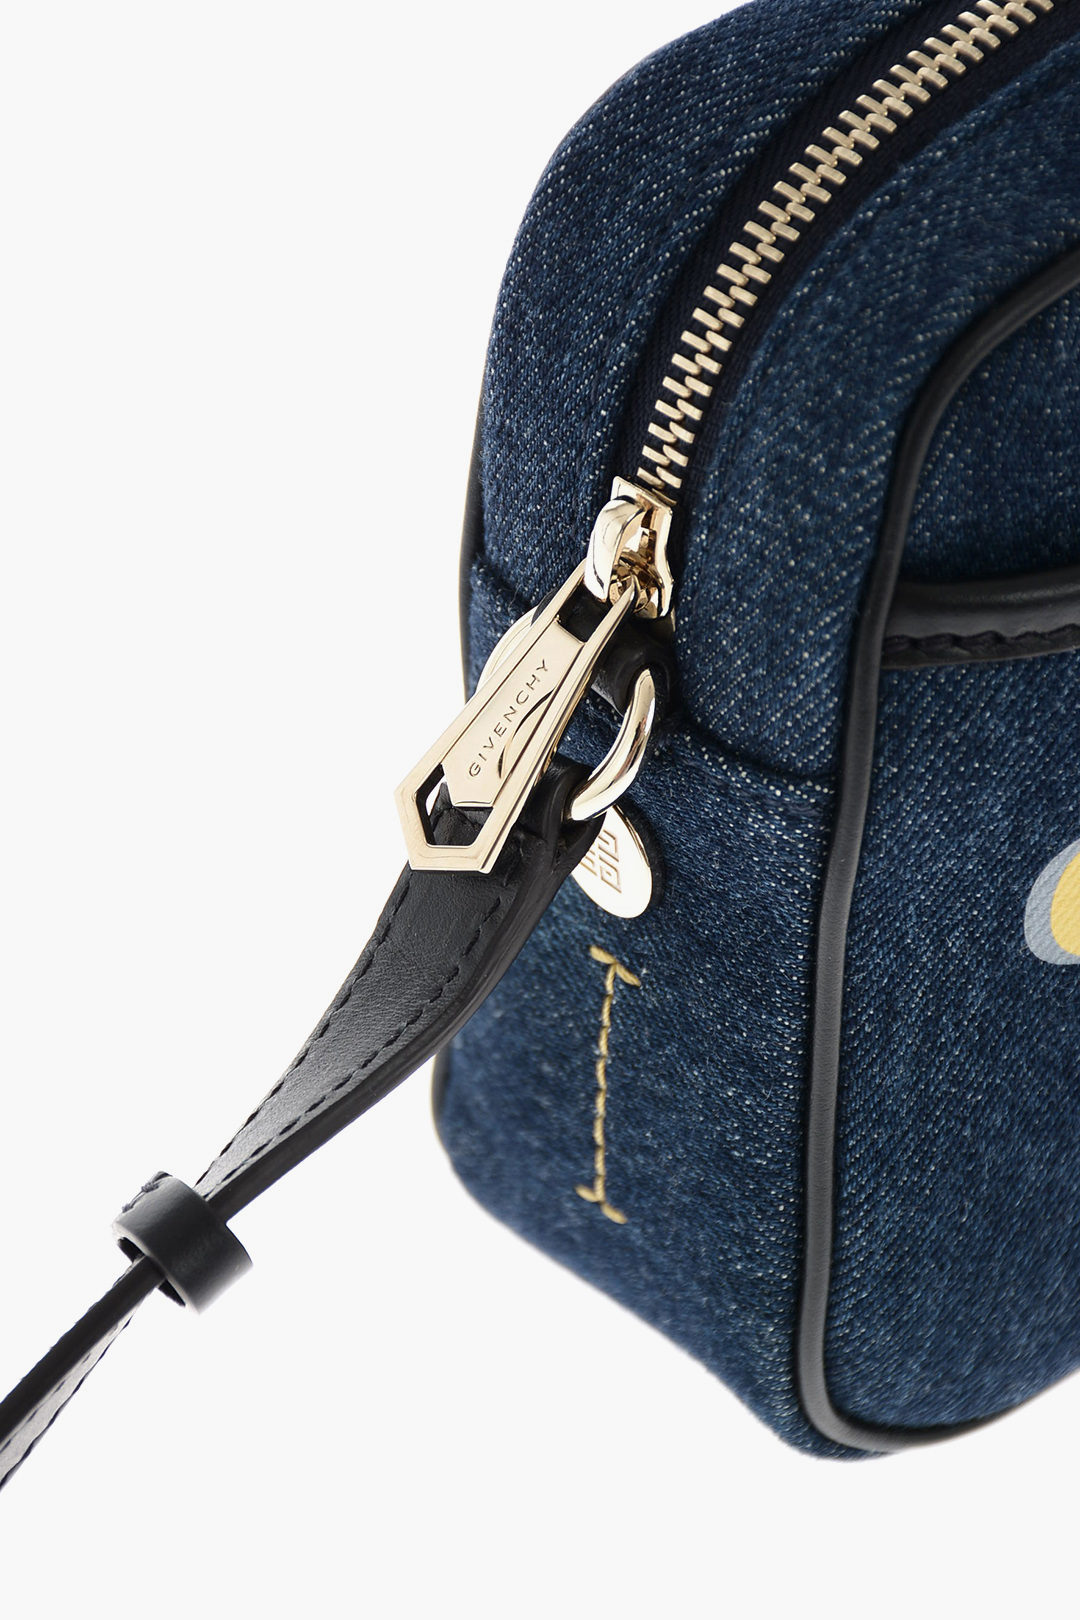 Givenchy Bond Denim Camera Bag — LSC INC